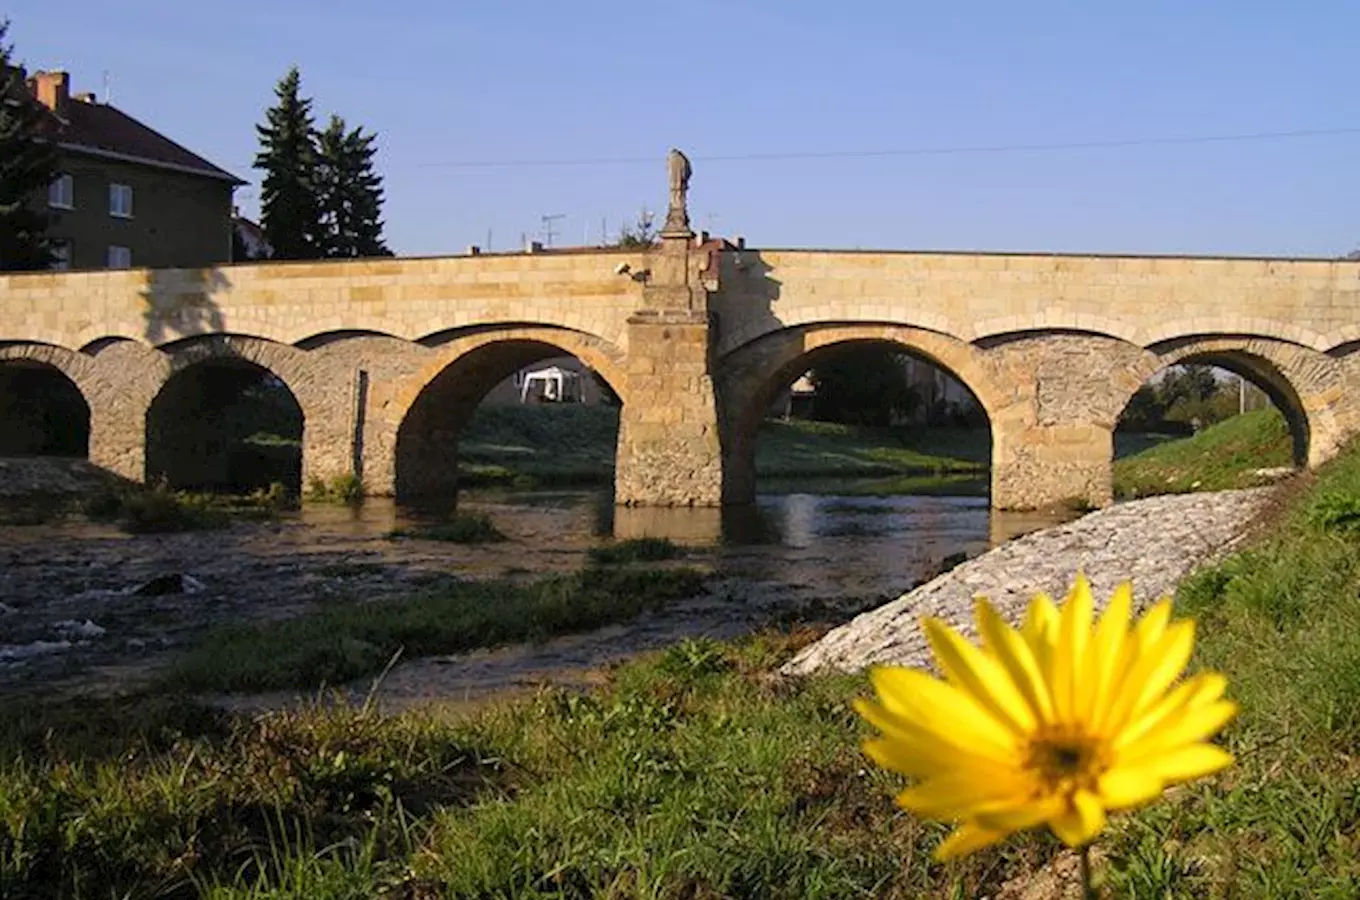 Svatojánský most v Litovli - nejstarší kamenný most na Moravě